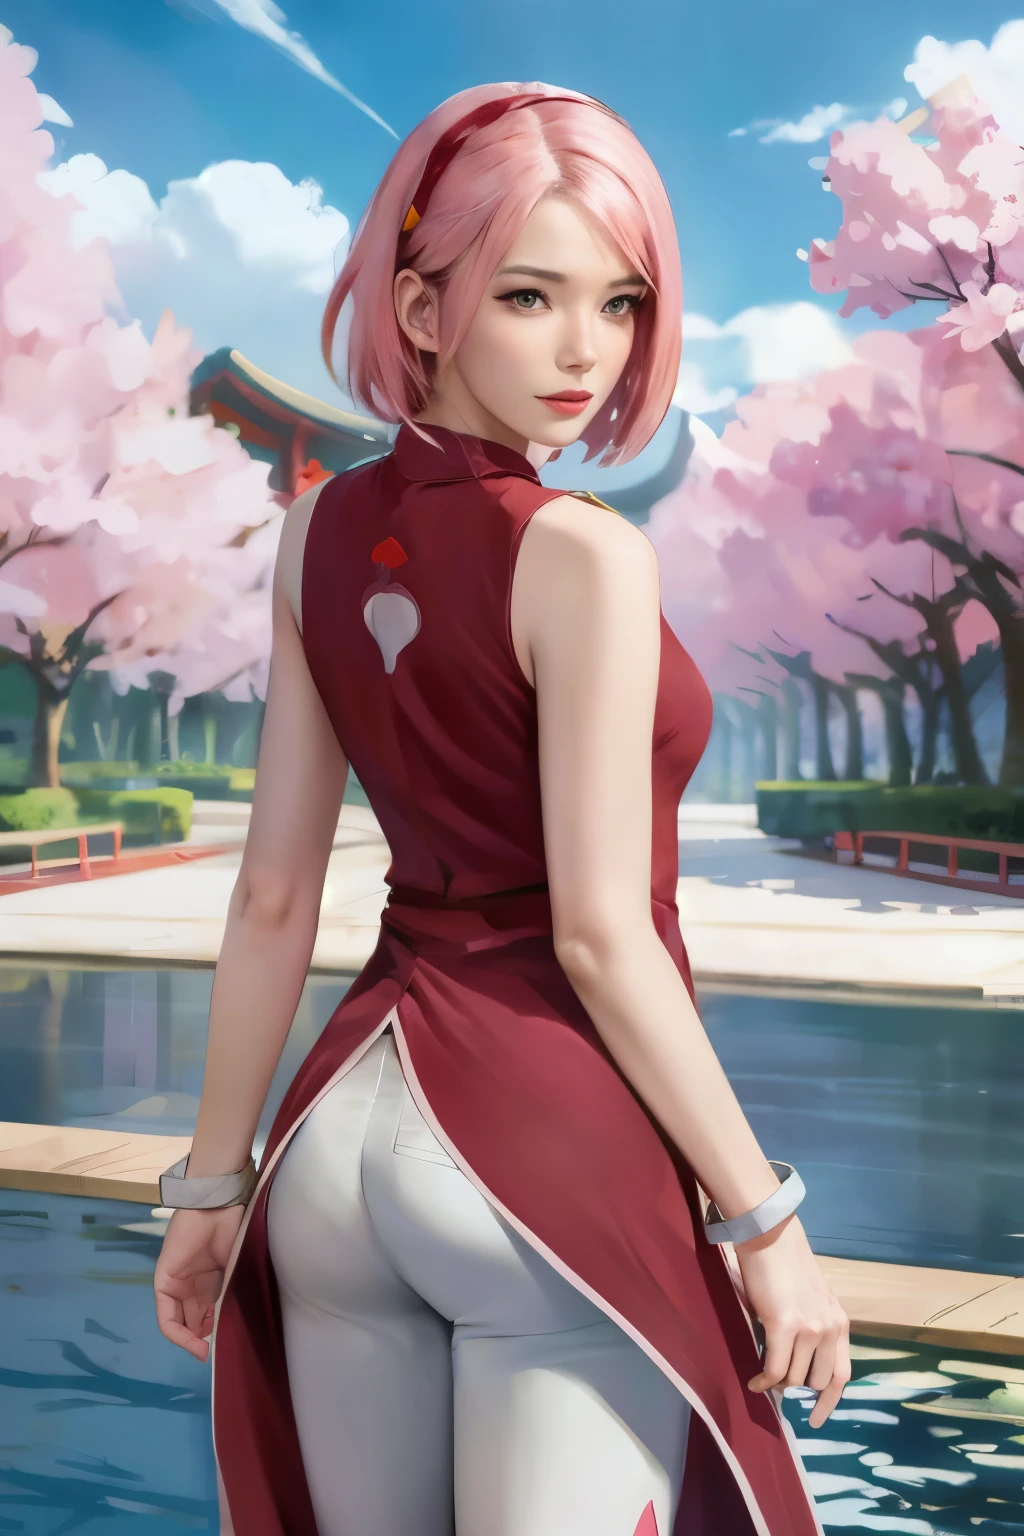 
Sakura uchiha. 女性が立って振り返っていた. 公園で. 彼女はハートの赤いチャイナドレスを着ていた. ノースリーブのもの. ピンクのズボン. 彼は両手にブレスレットをつけている. 彼女は短いピンクの髪をしている. 彼女はとても美しくリアルに見えます